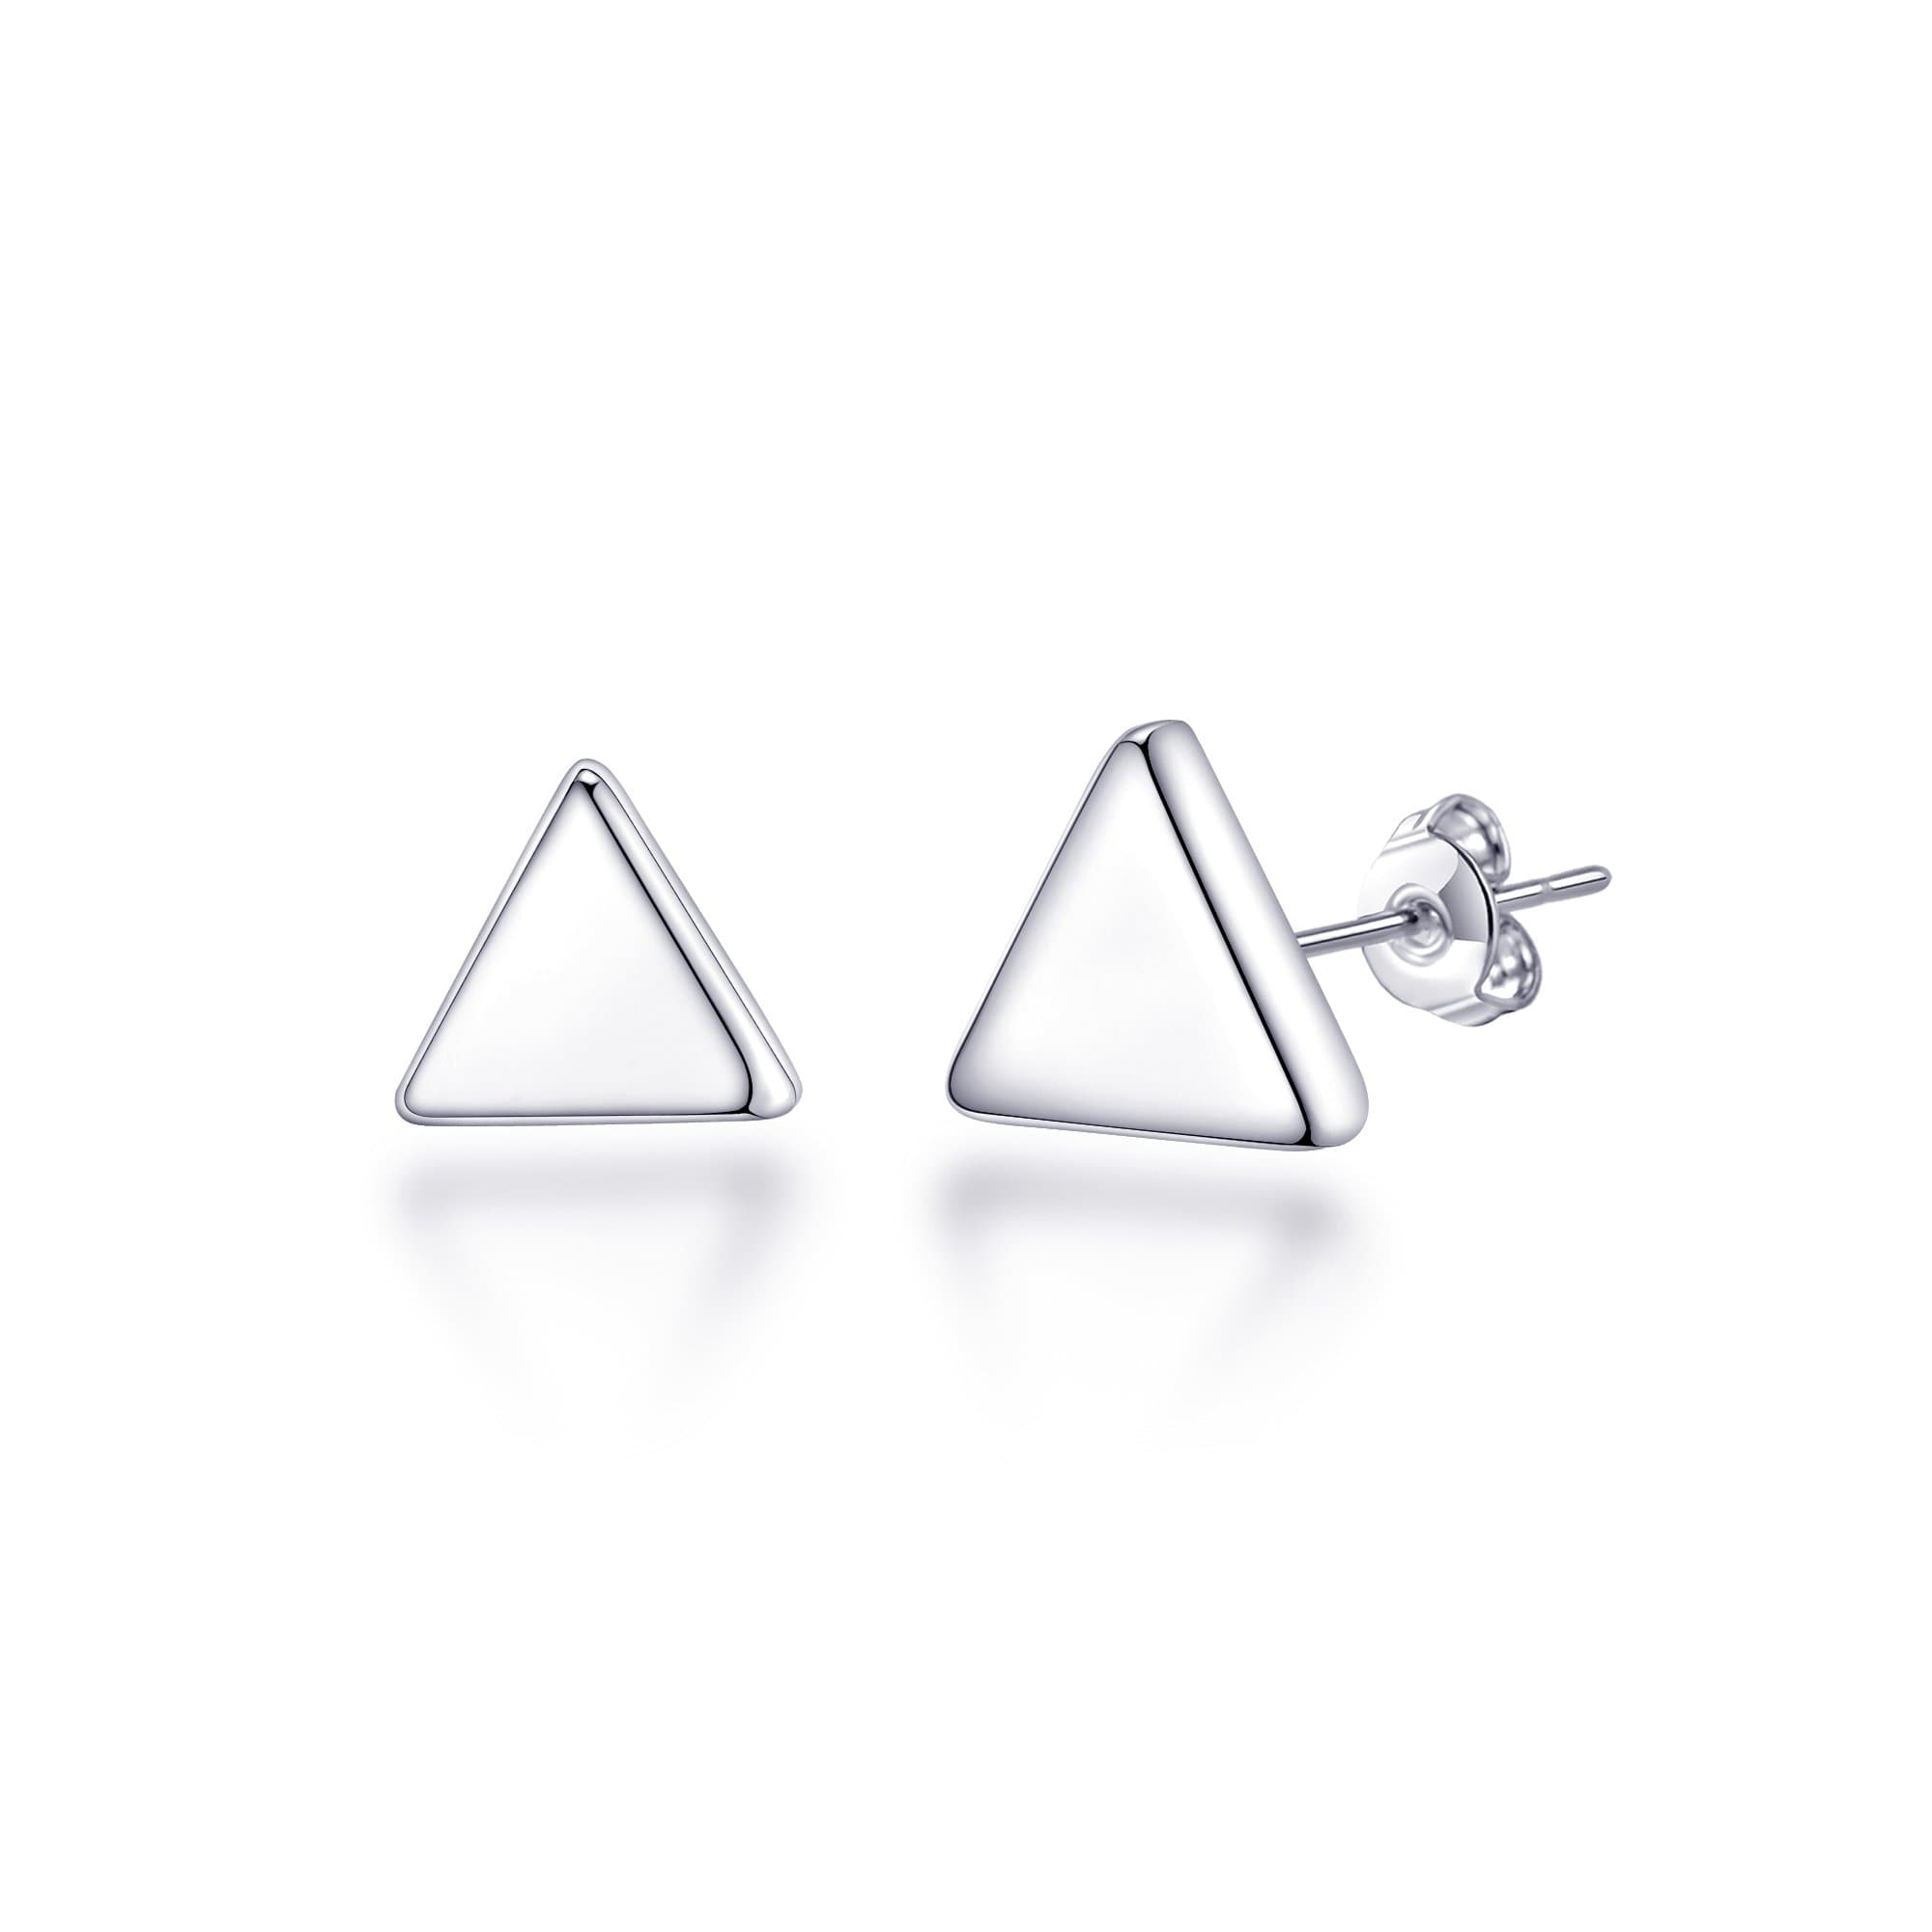 Sterling Silver Triangle Earrings by Philip Jones Jewellery